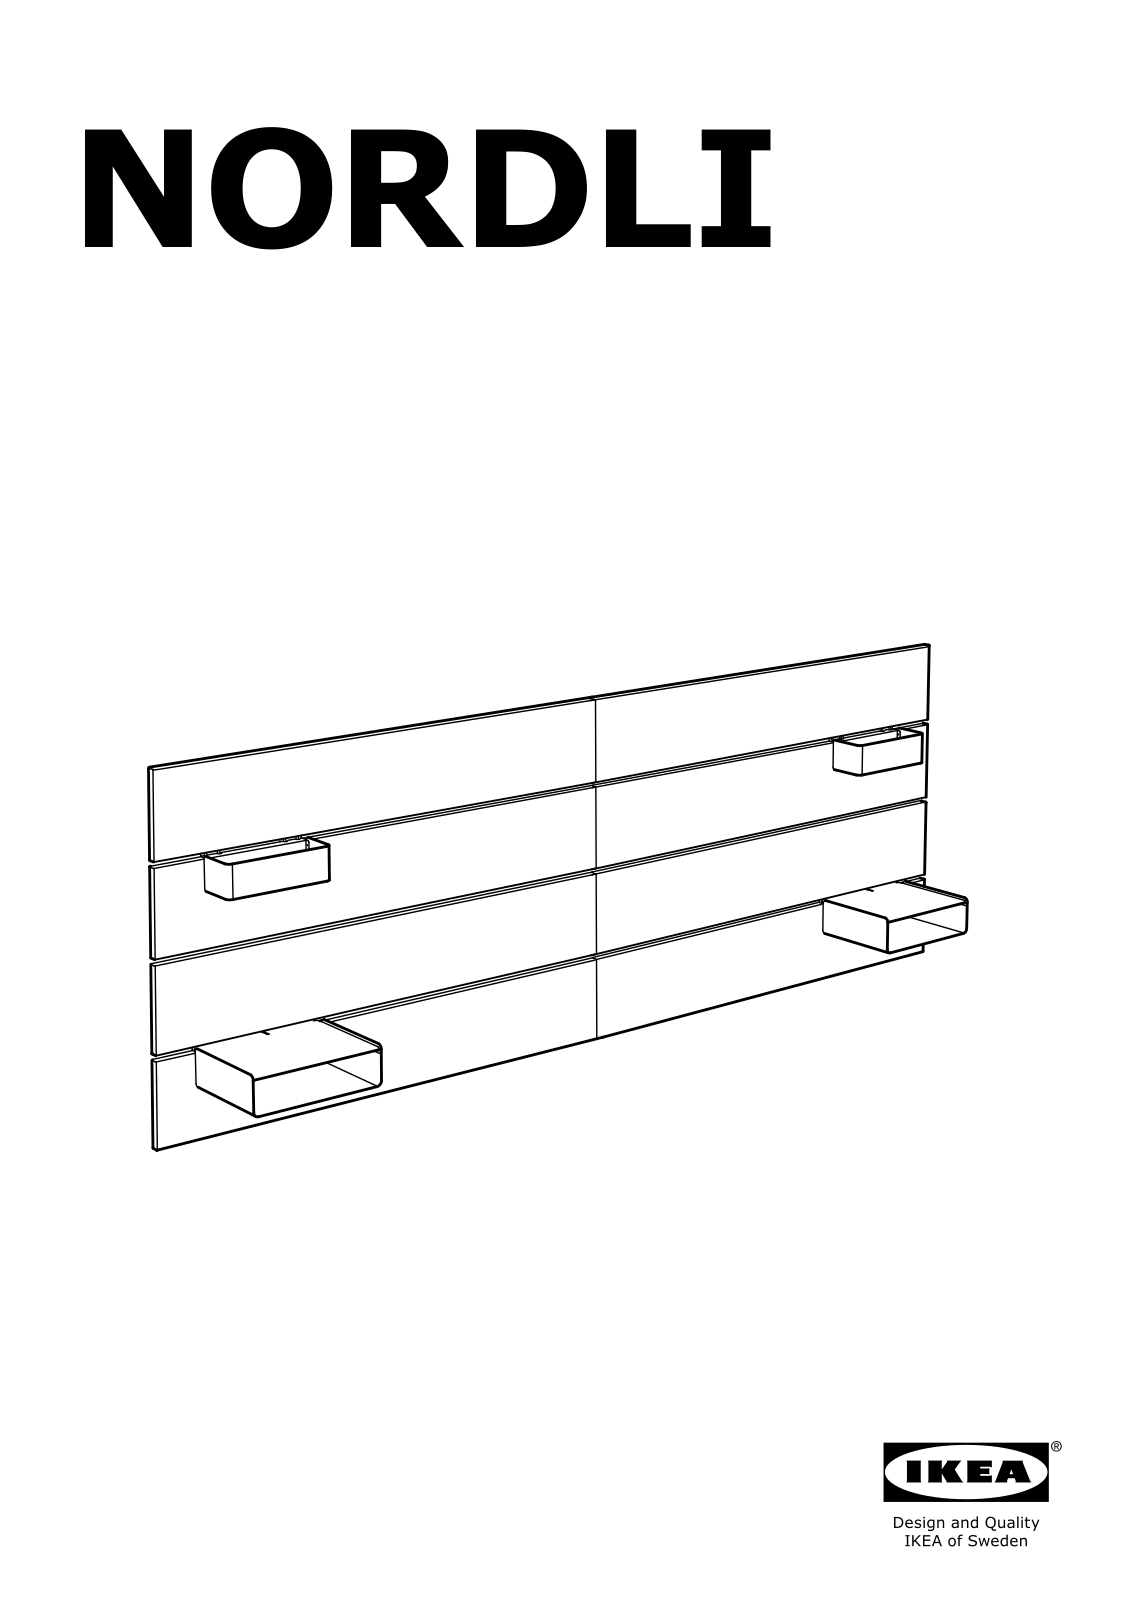 IKEA NORDLI headboard Assembly Instruction